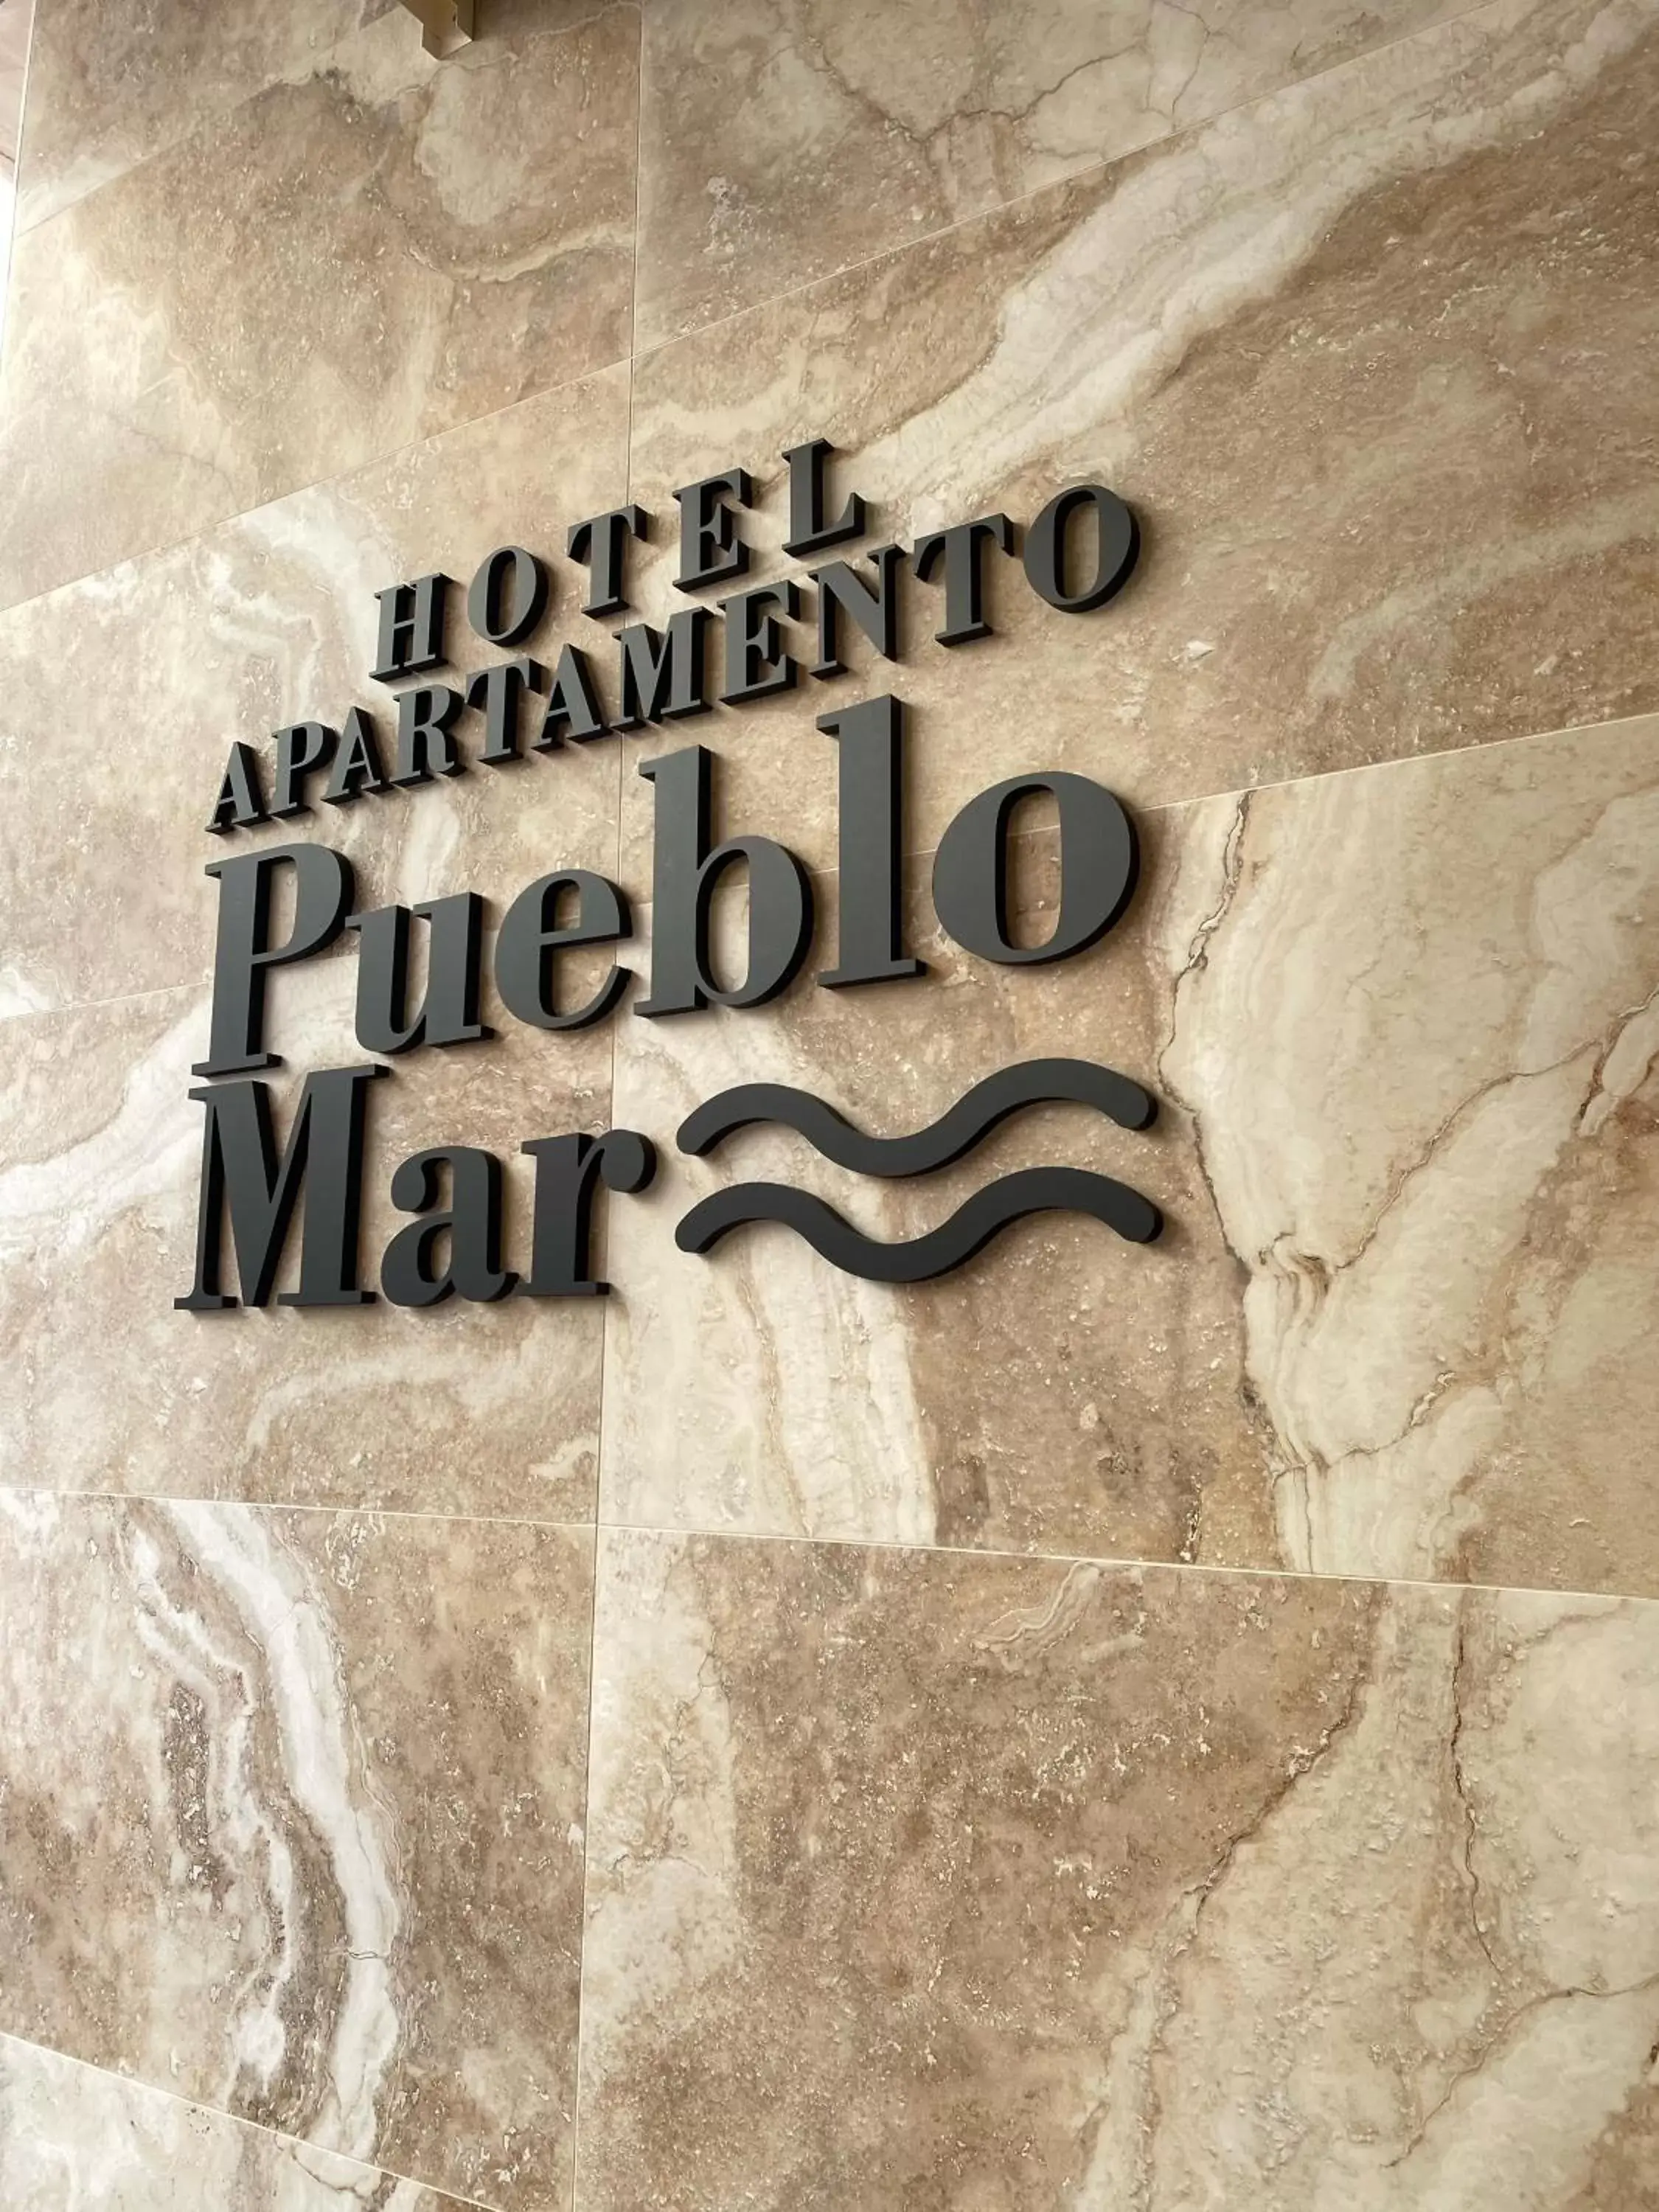 Property logo or sign in Hotel Apartamentos Pueblo Mar